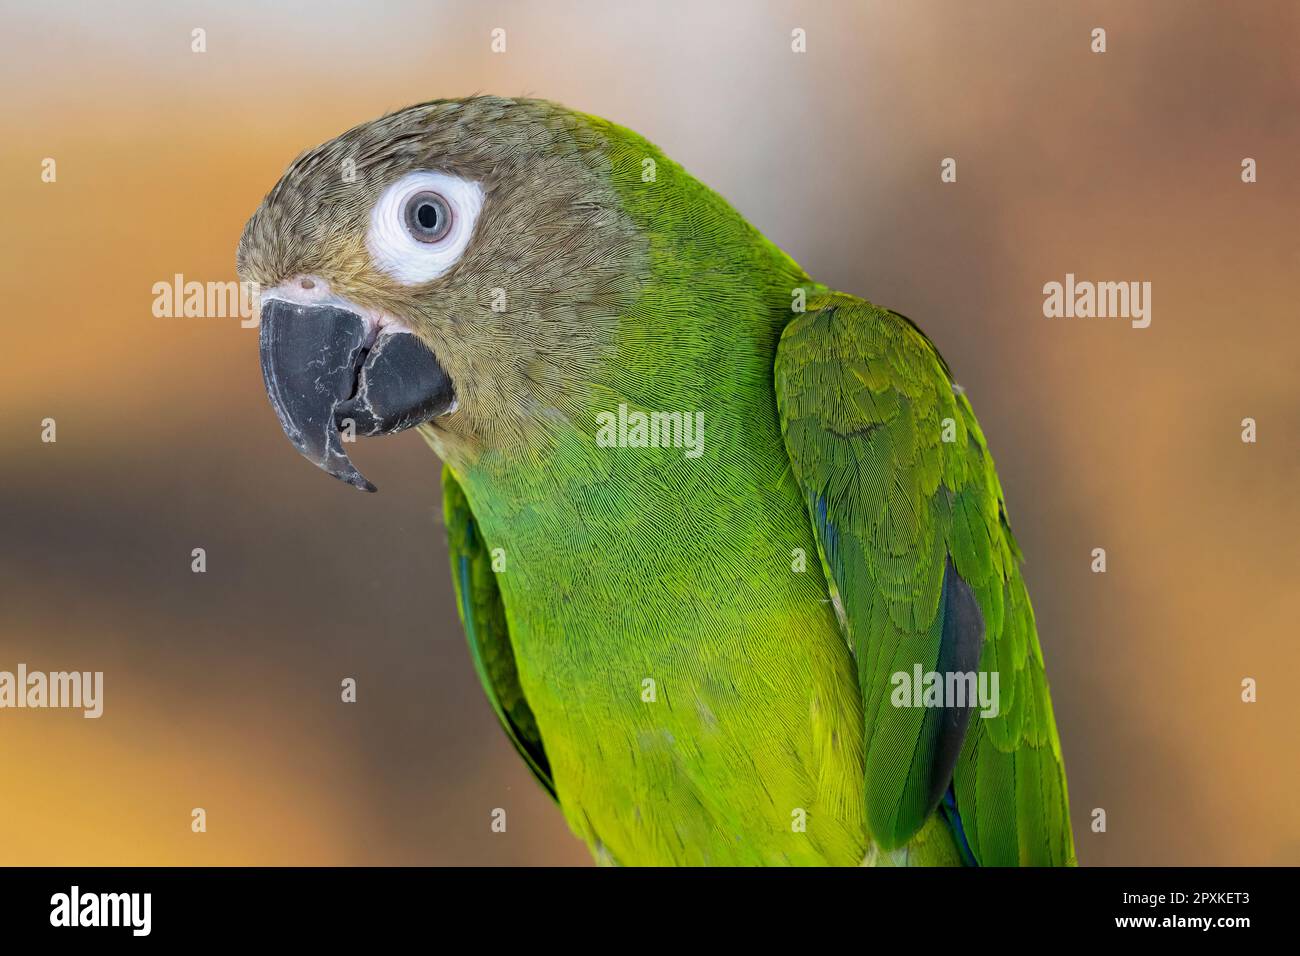 dusky-headed parakeet or Weddell's conure Stock Photo